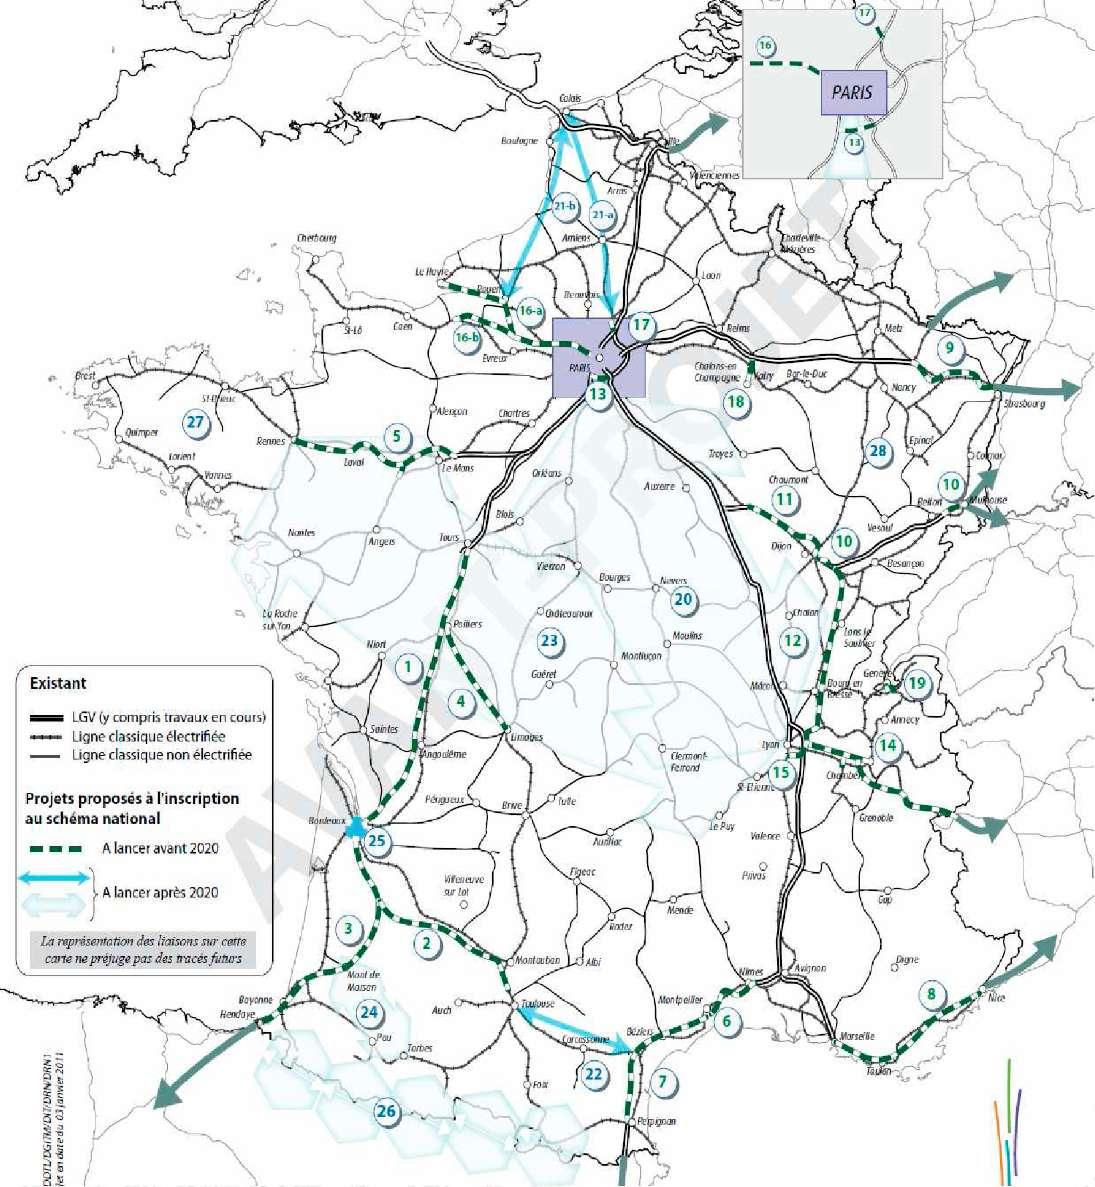 2. Perspektywy rozwoju kolei dużych prędkości we Francji